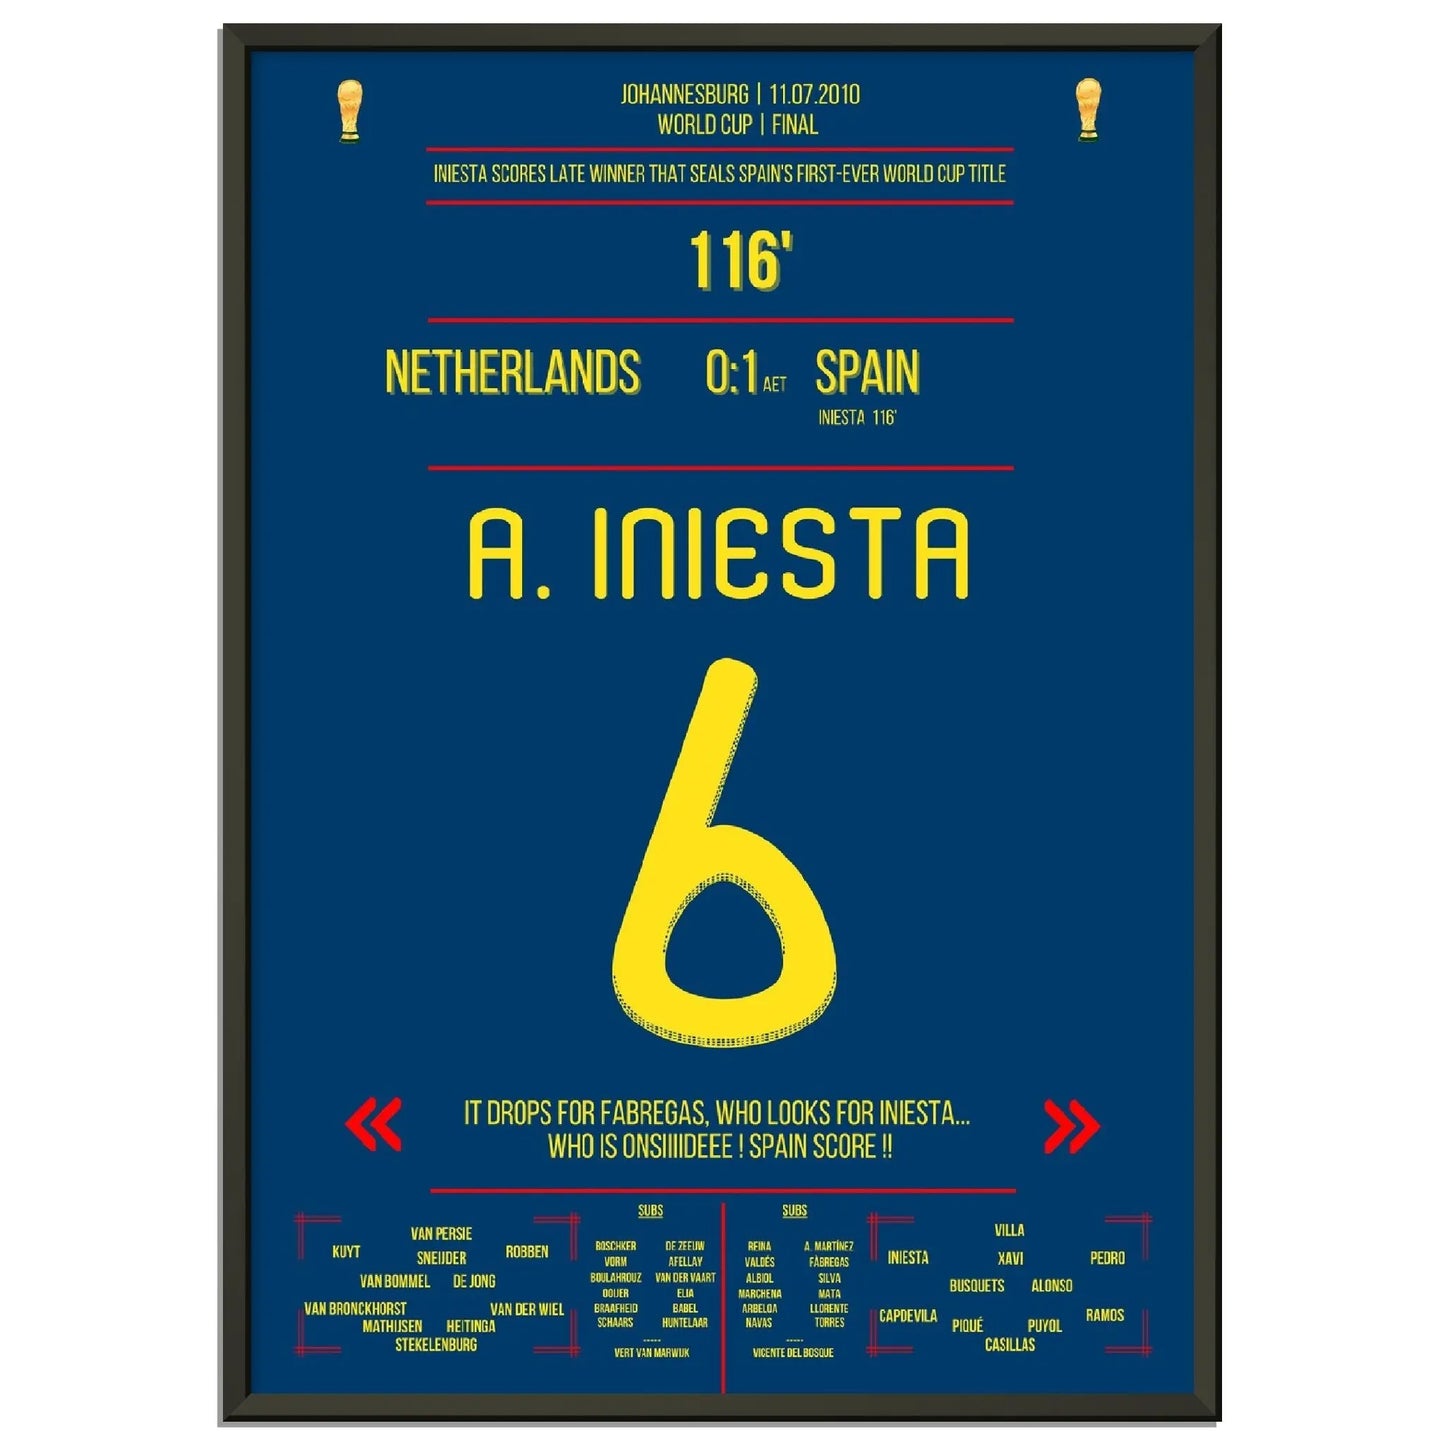 Iniesta's Tor zur Unsterblichkeit im WM Finale 2010 gegen Holland 